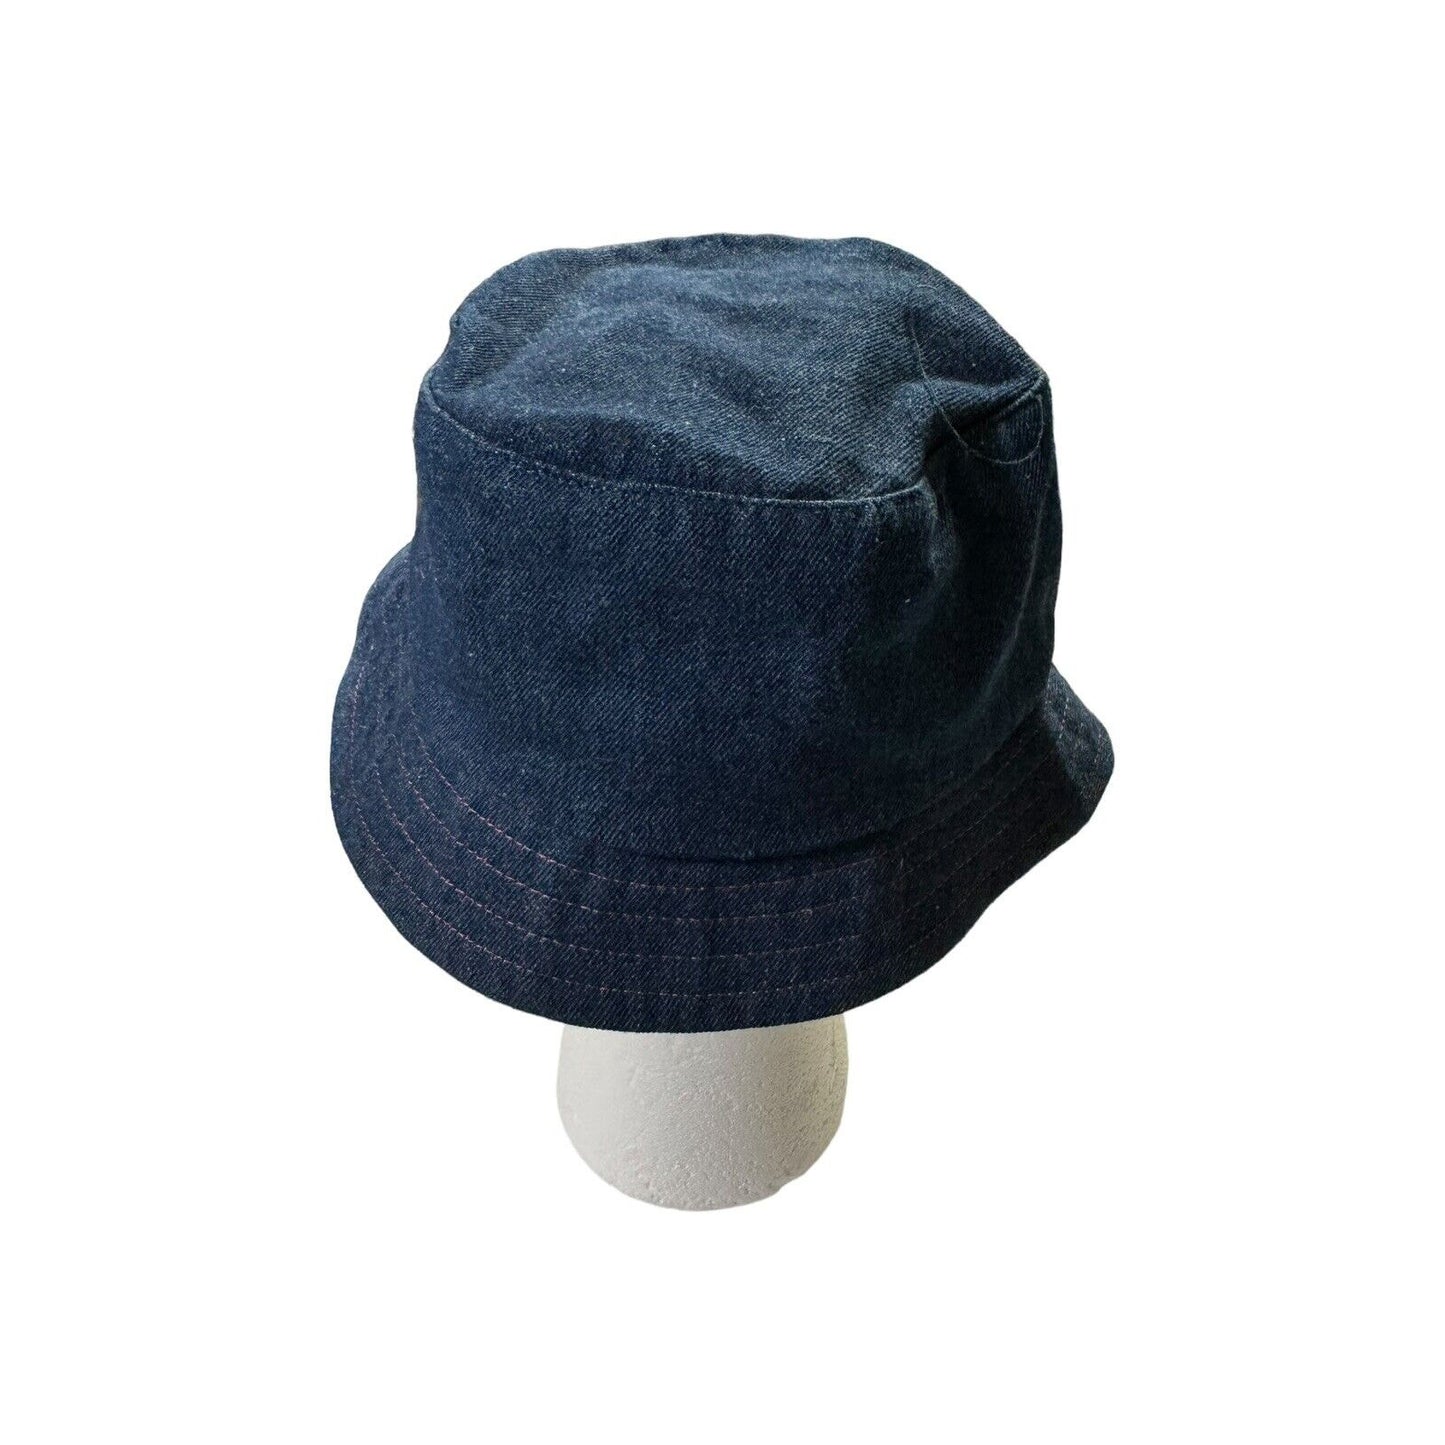 Vintage Disney Lizzie McGuire Embroidered Denim Bucket Hat Youth Size 7-14 Y2K